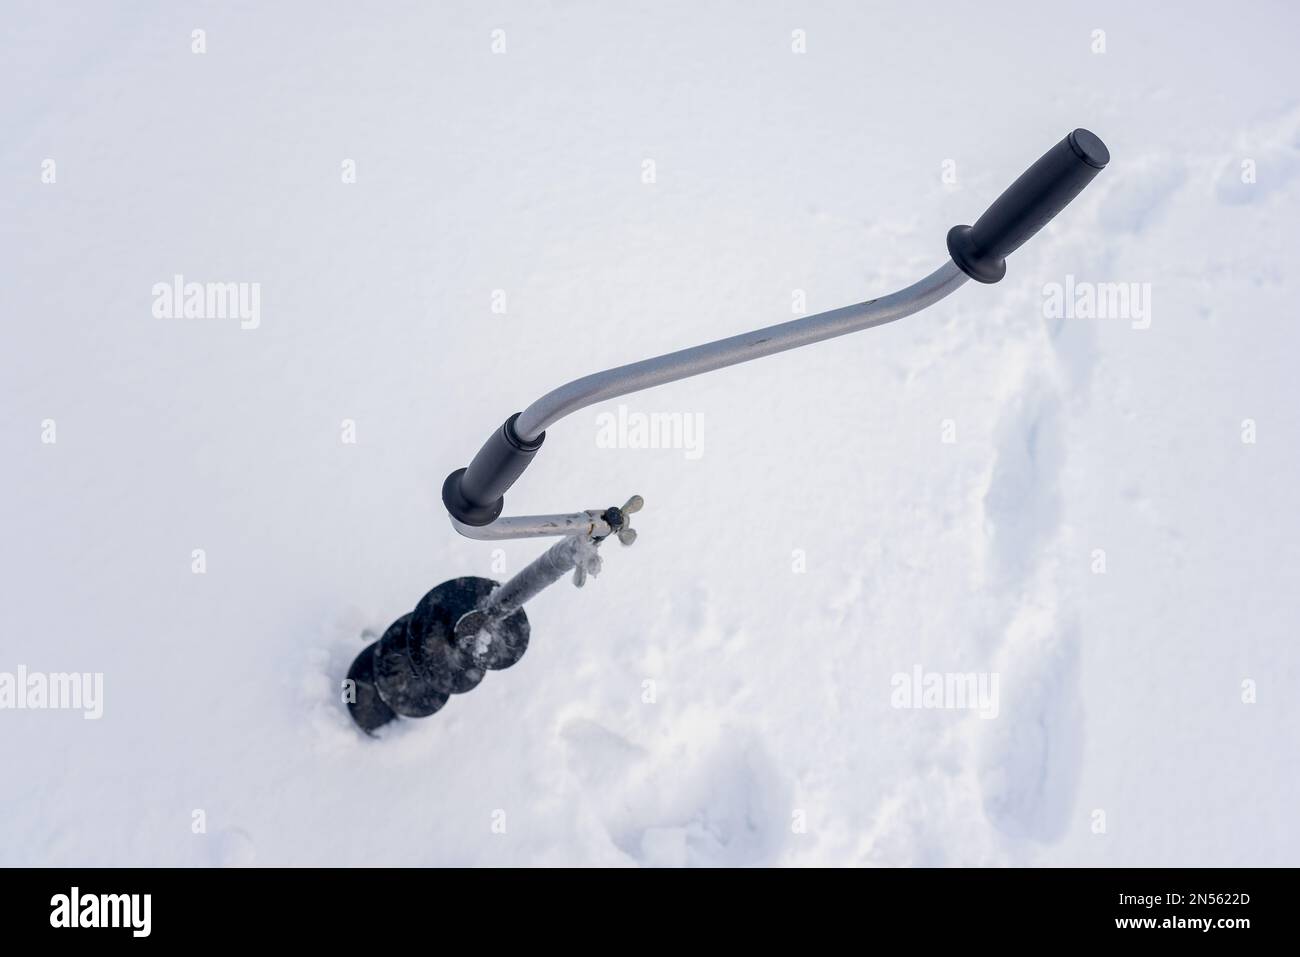 Une perceuse à glace à main noire en fer avec poignée incurvée se visse dans la glace en hiver sur fond de neige blanche. Banque D'Images